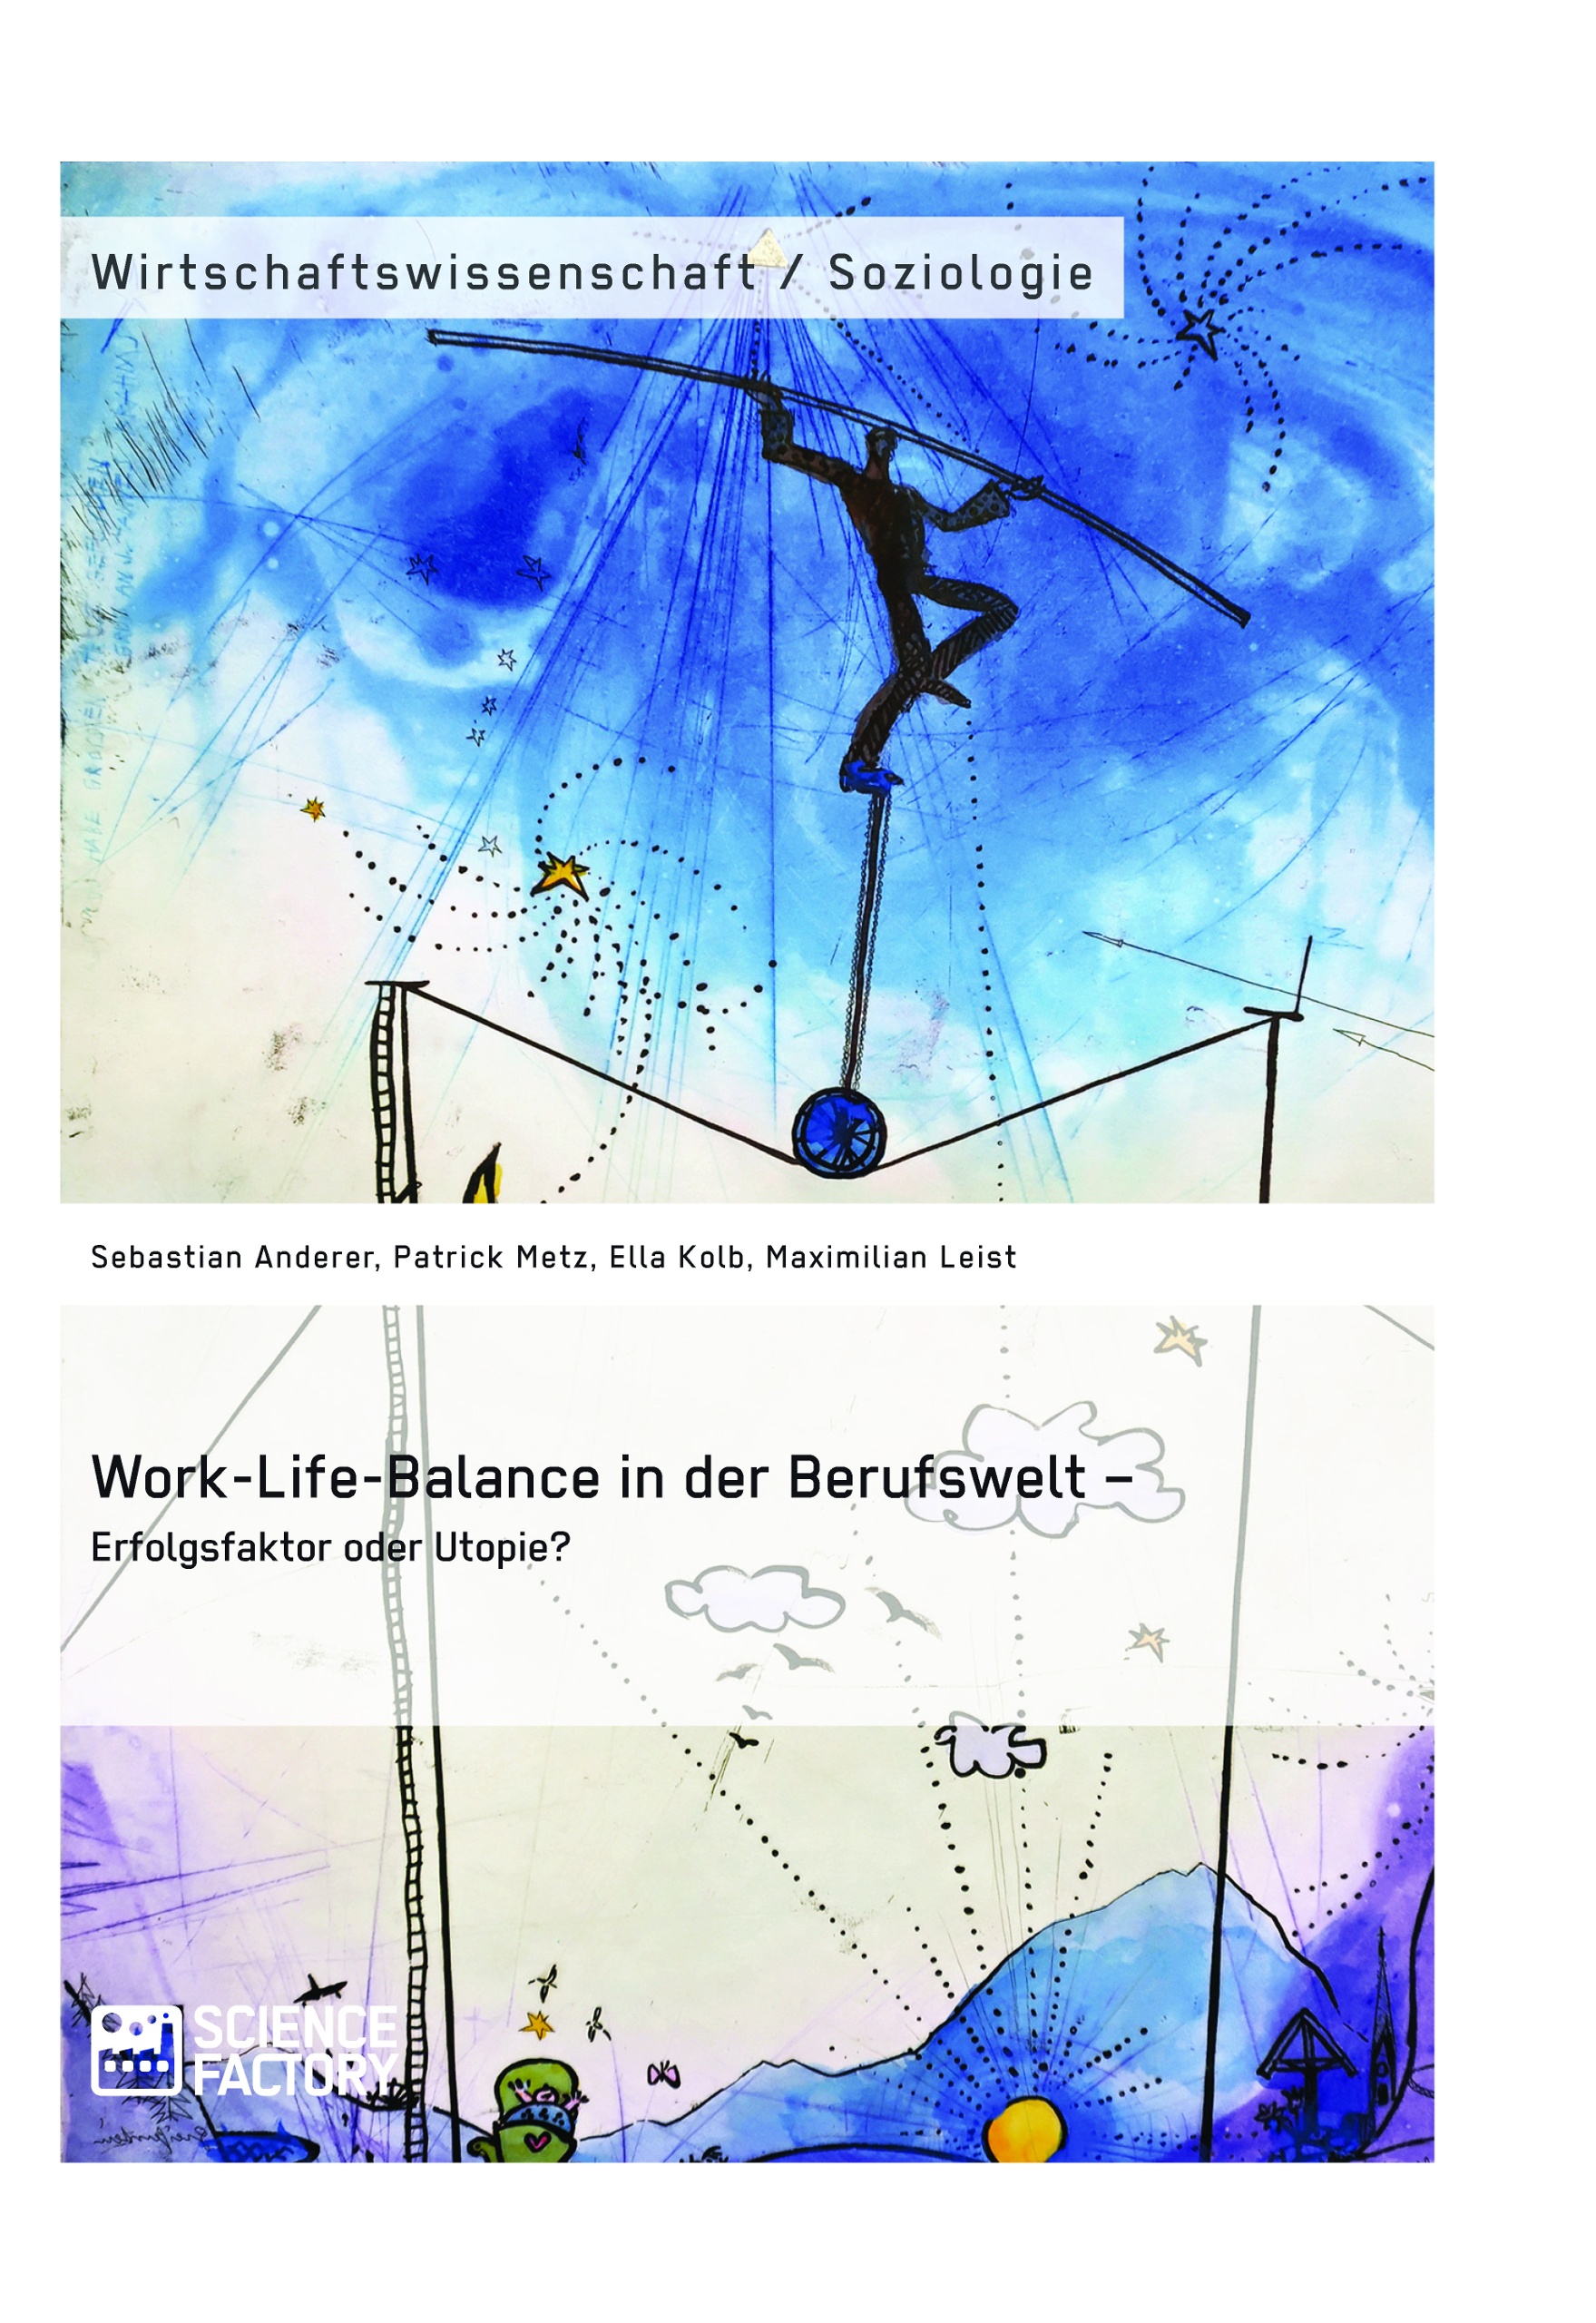 Titre: Work-Life-Balance in der Berufswelt – Erfolgsfaktor oder Utopie?